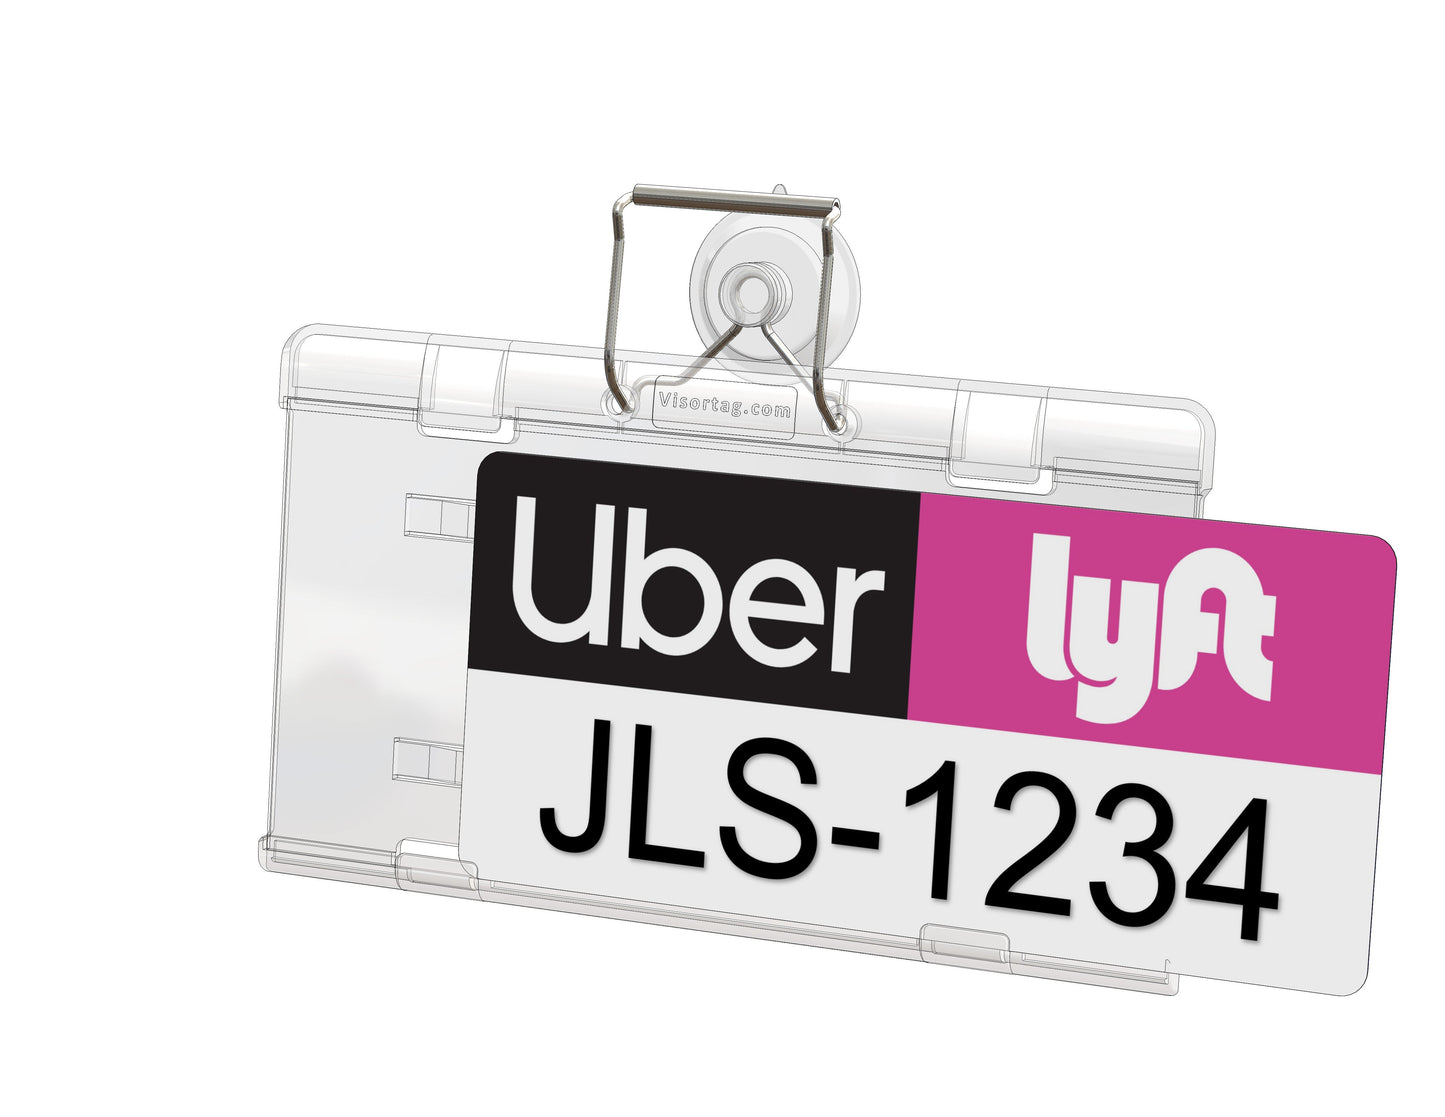  Uber Lyft sign holder for car